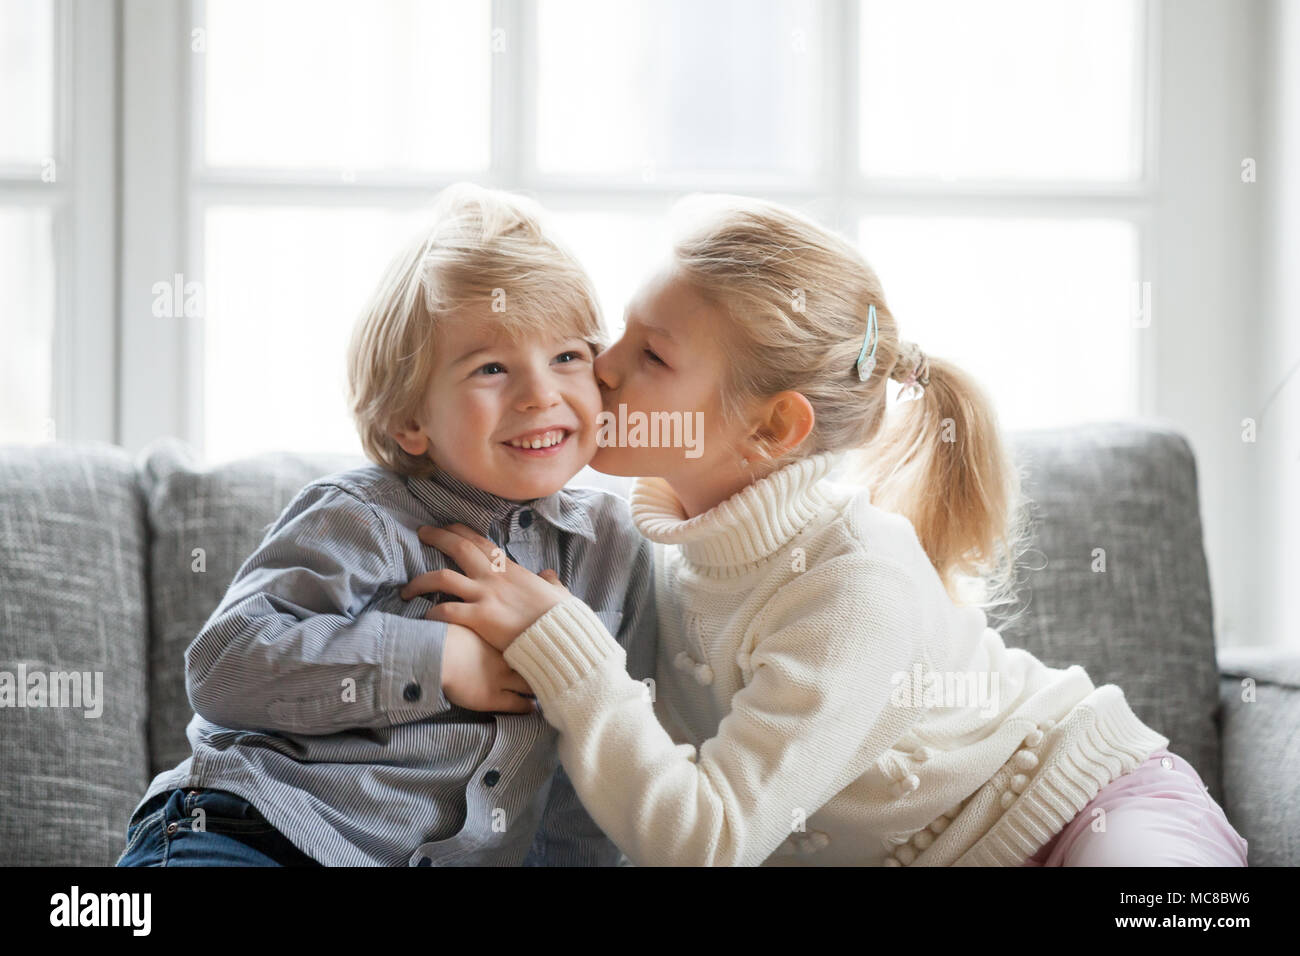 Ältere Schwester umarmen wenig jüngeren Bruder zu Hause, Kind Mädchen küssen Süß schüchtern lächelnd Vorschule junge auf Wange, glückliche Kinder sich gemeinsam amüsiert, l Stockfoto